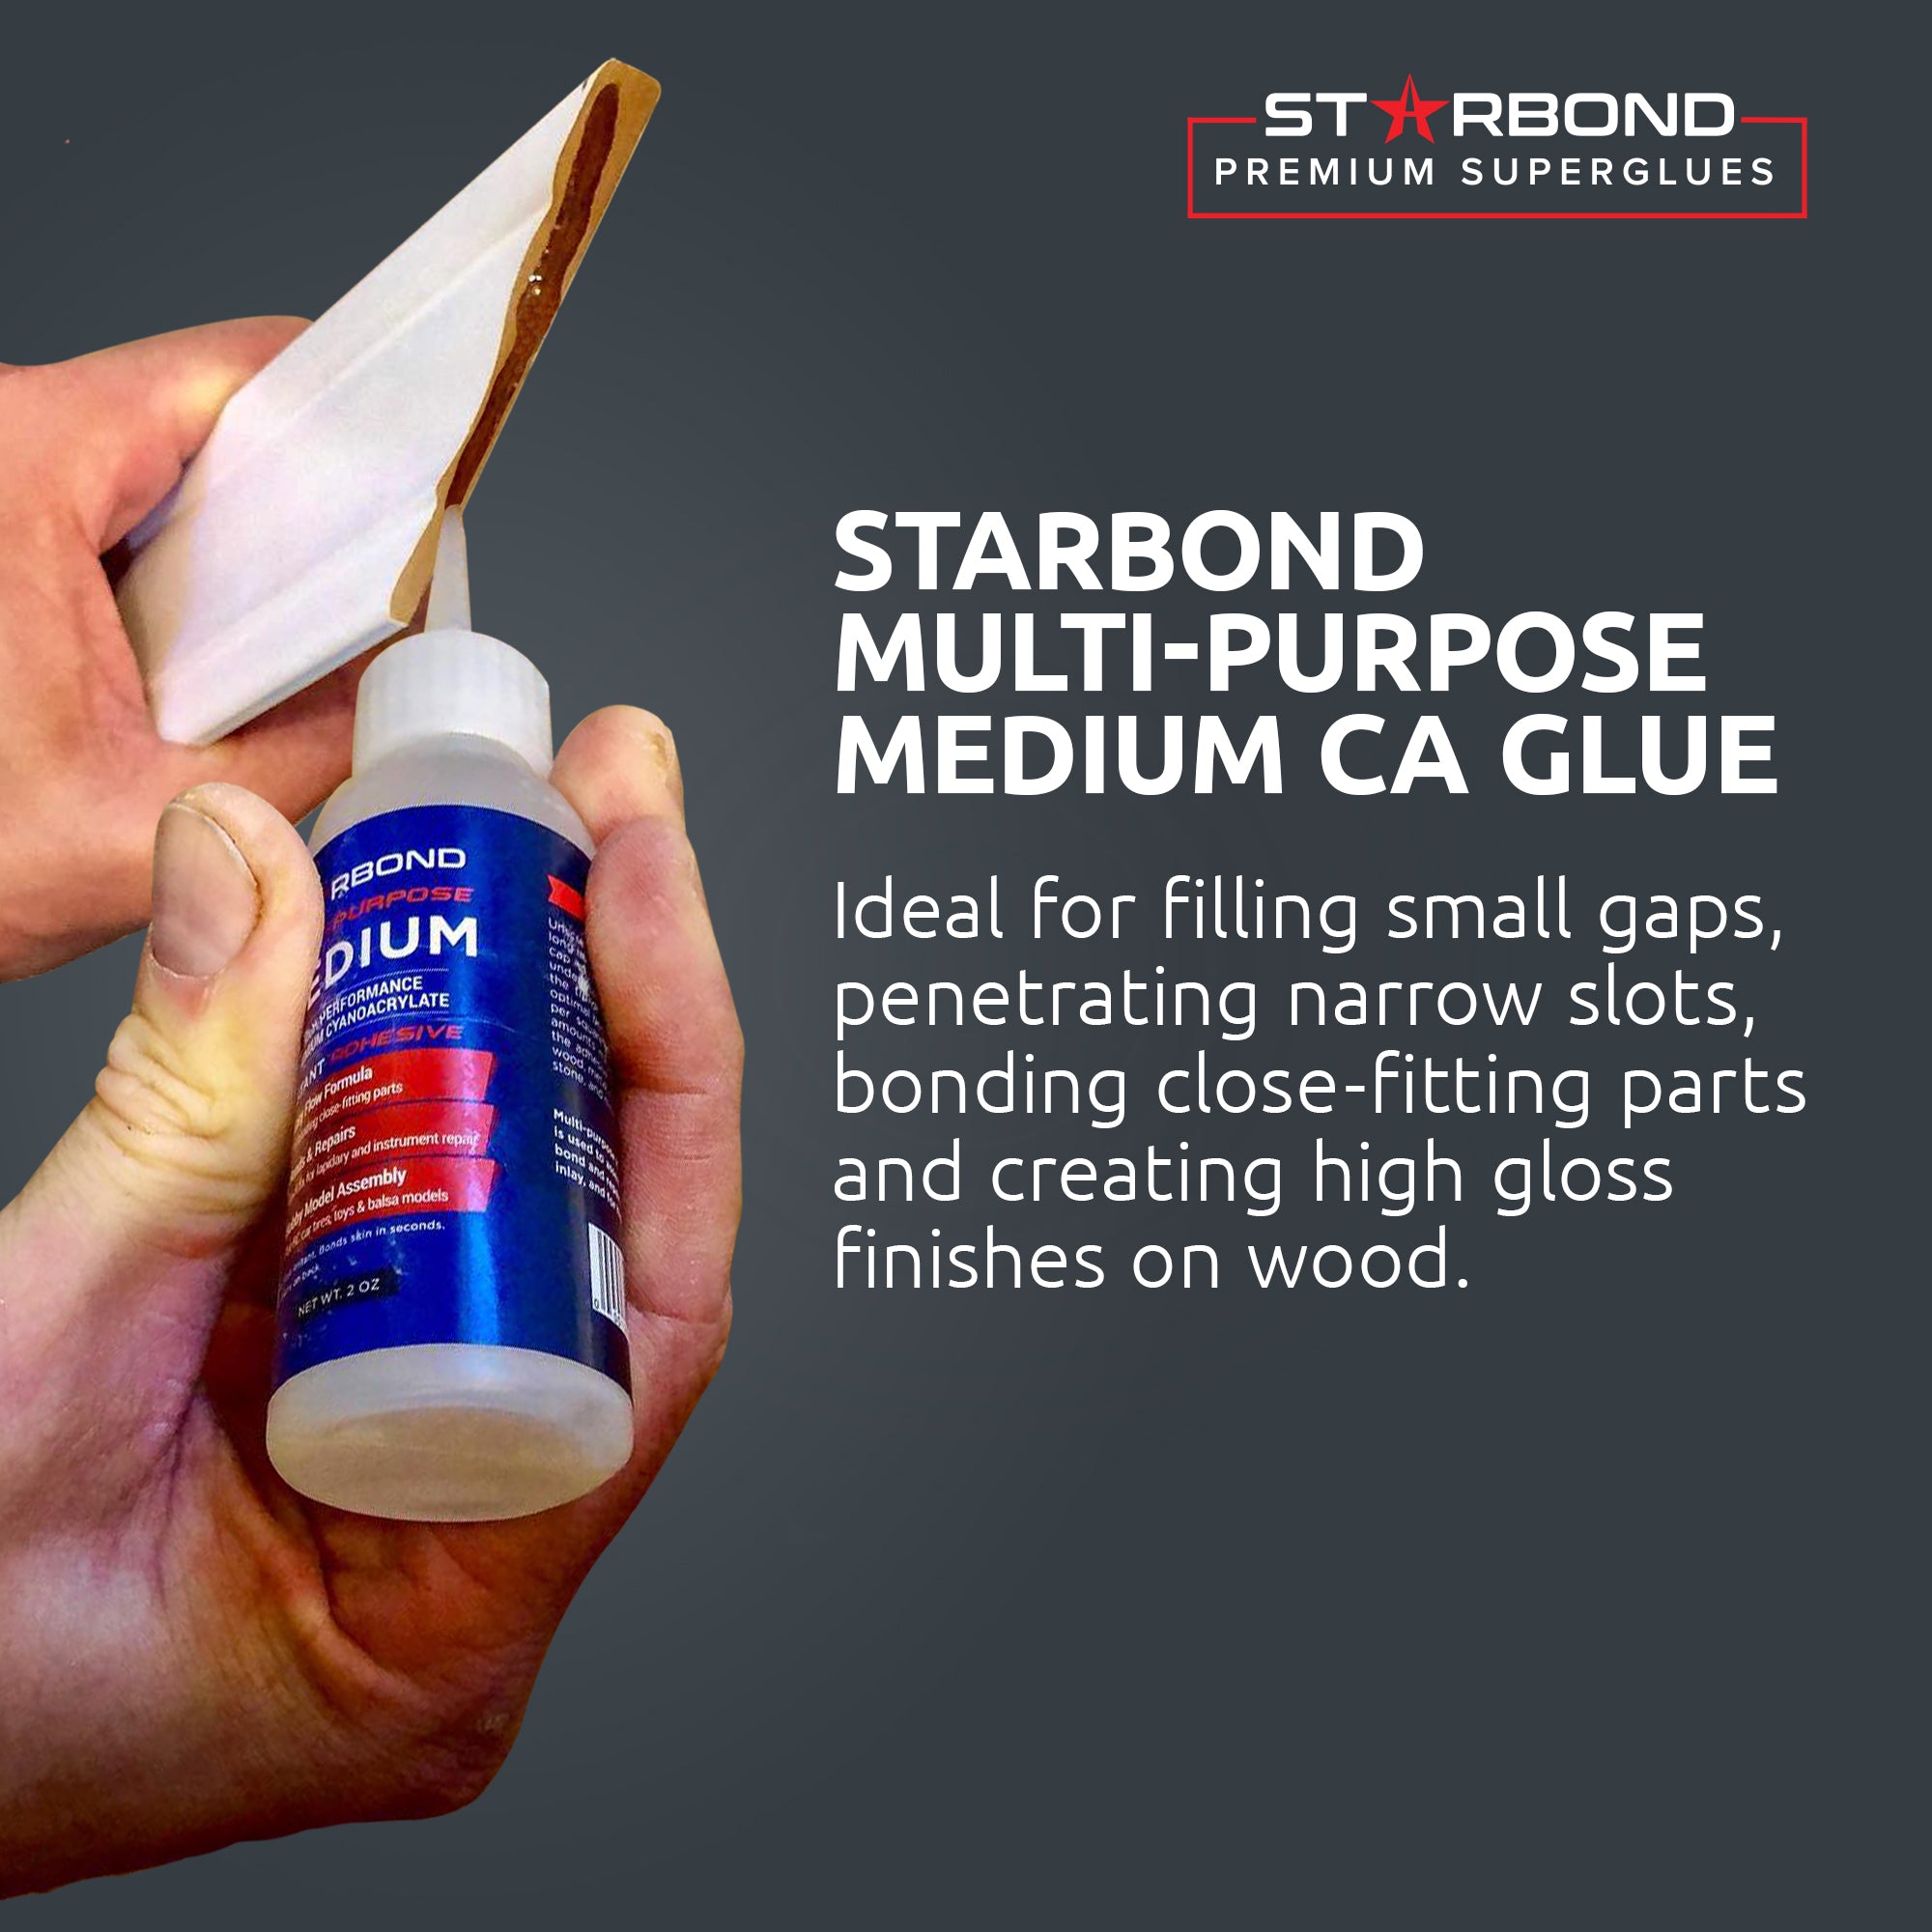 Starbond Gap Filler Thick CA Glue EM-2000 - STARBOND Premium CA Glues